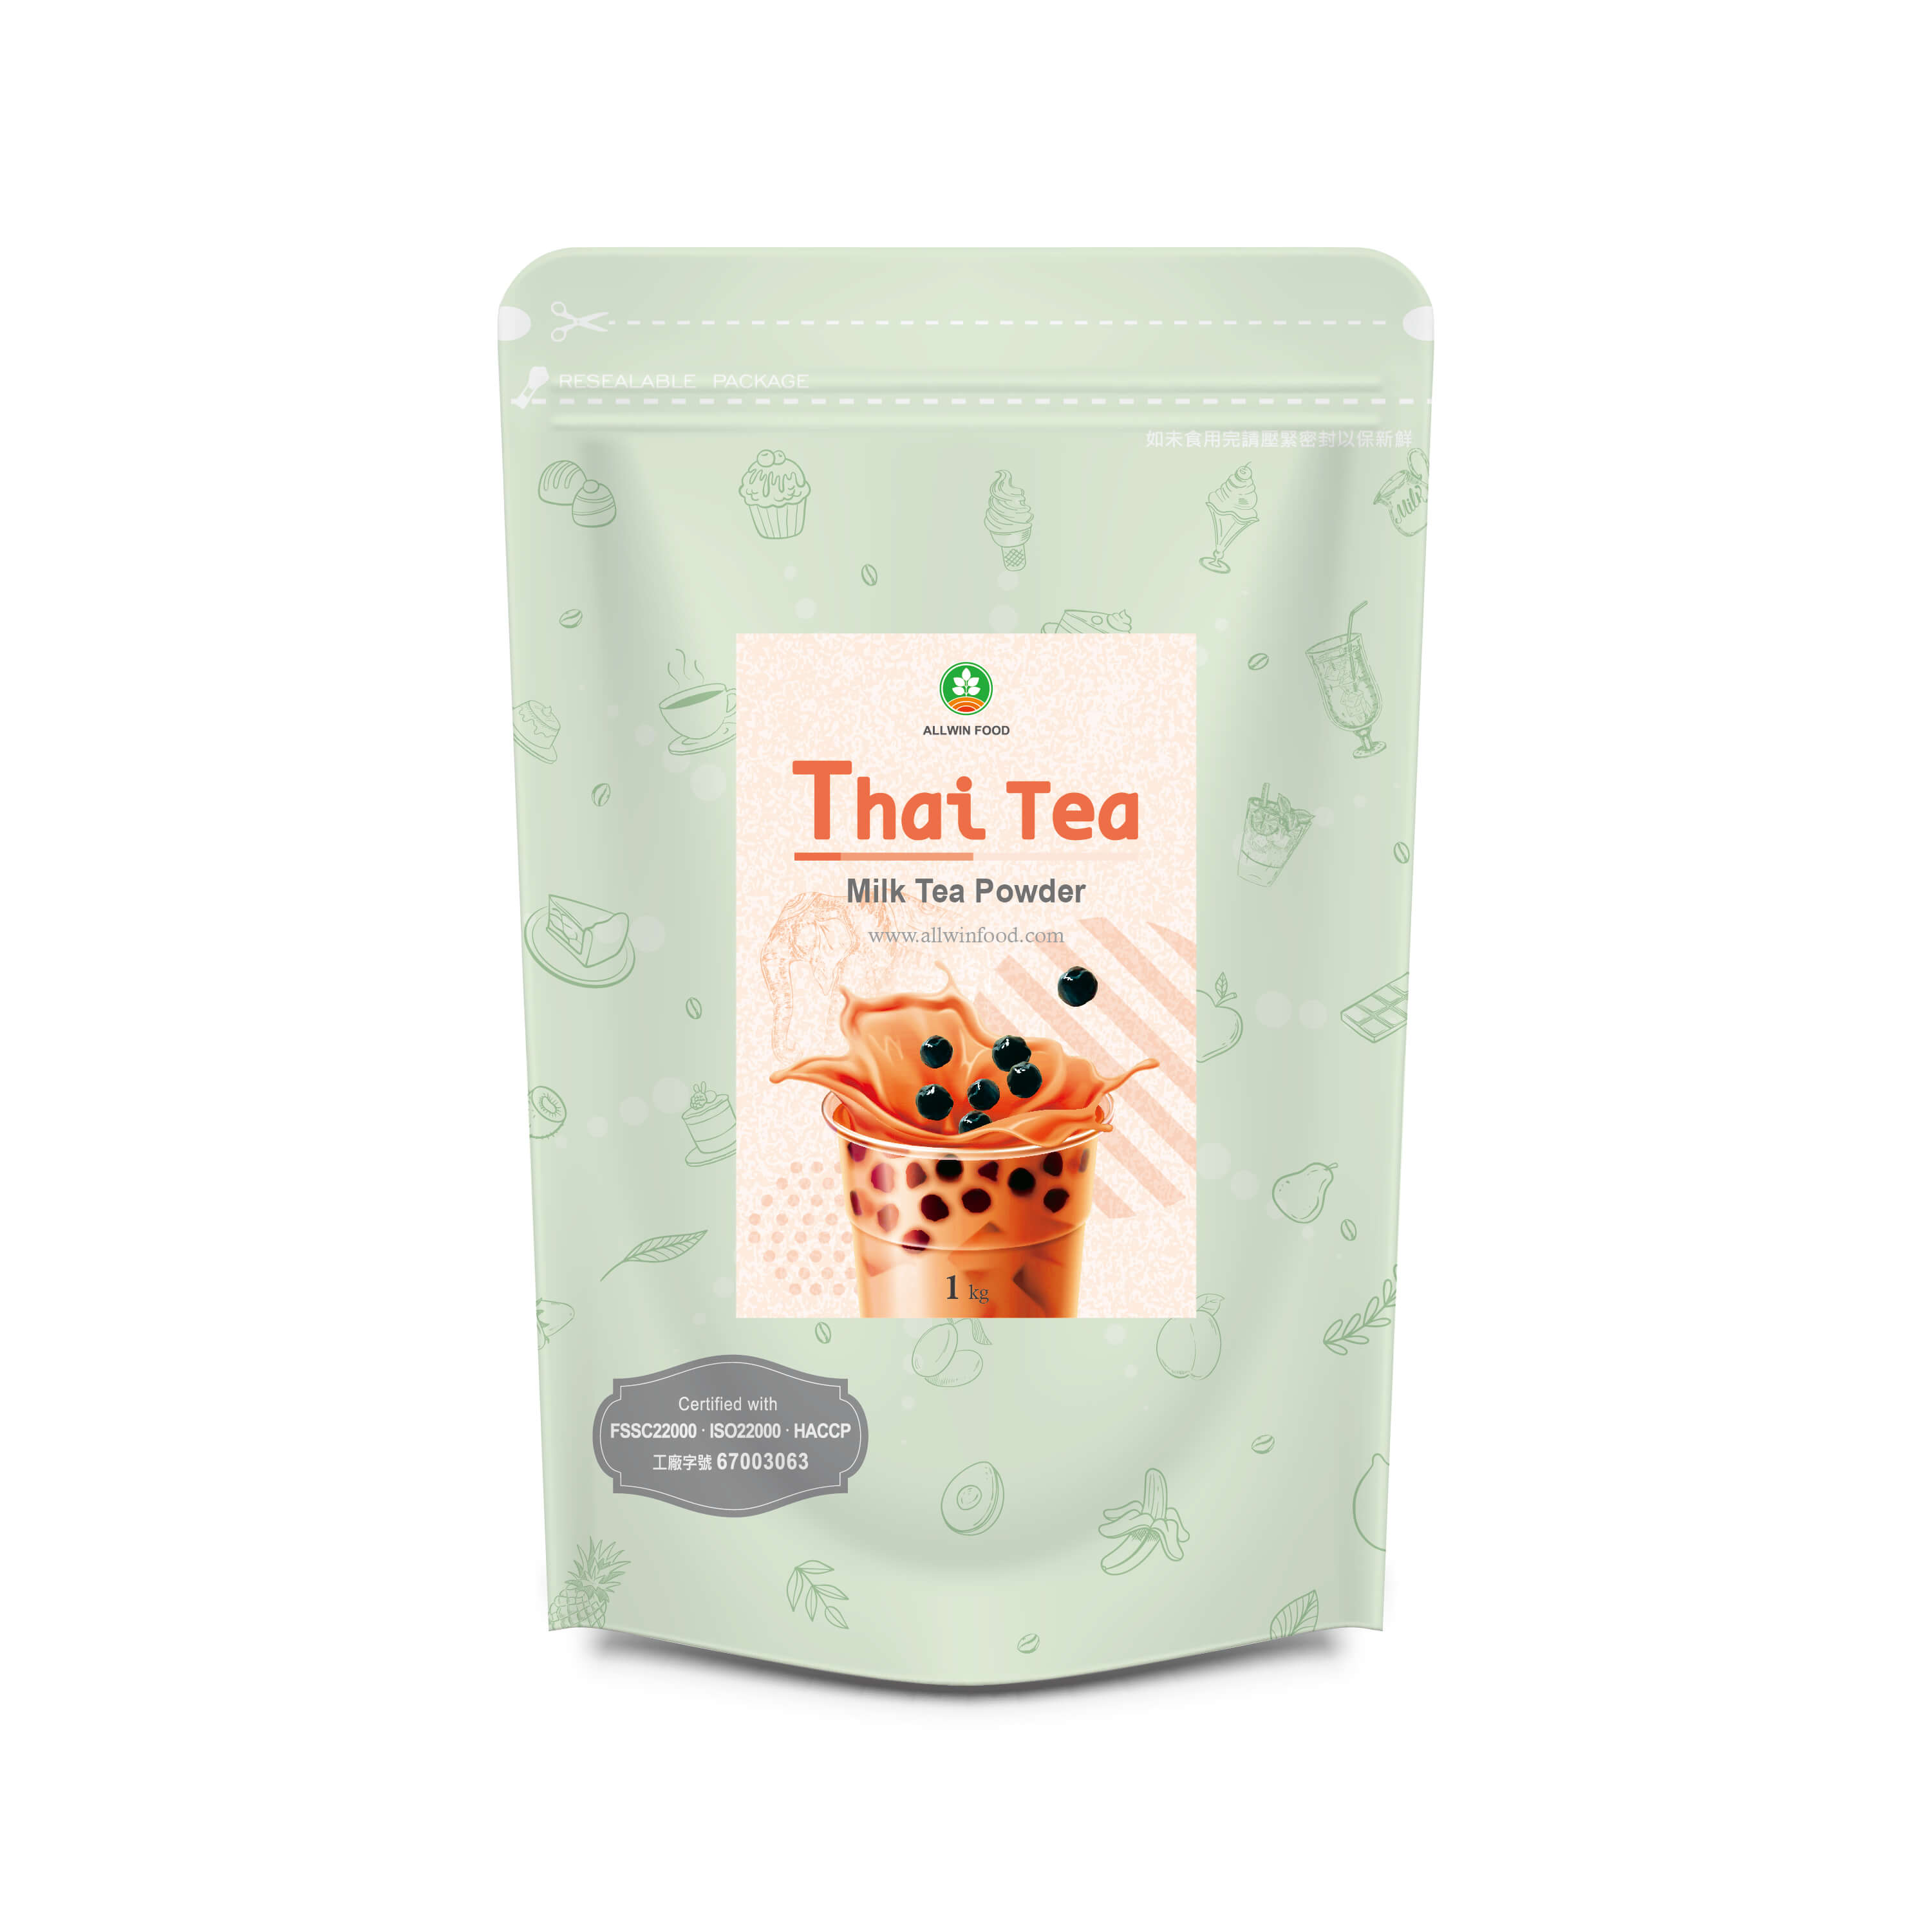 Thai Milk Tea Powder Supplier